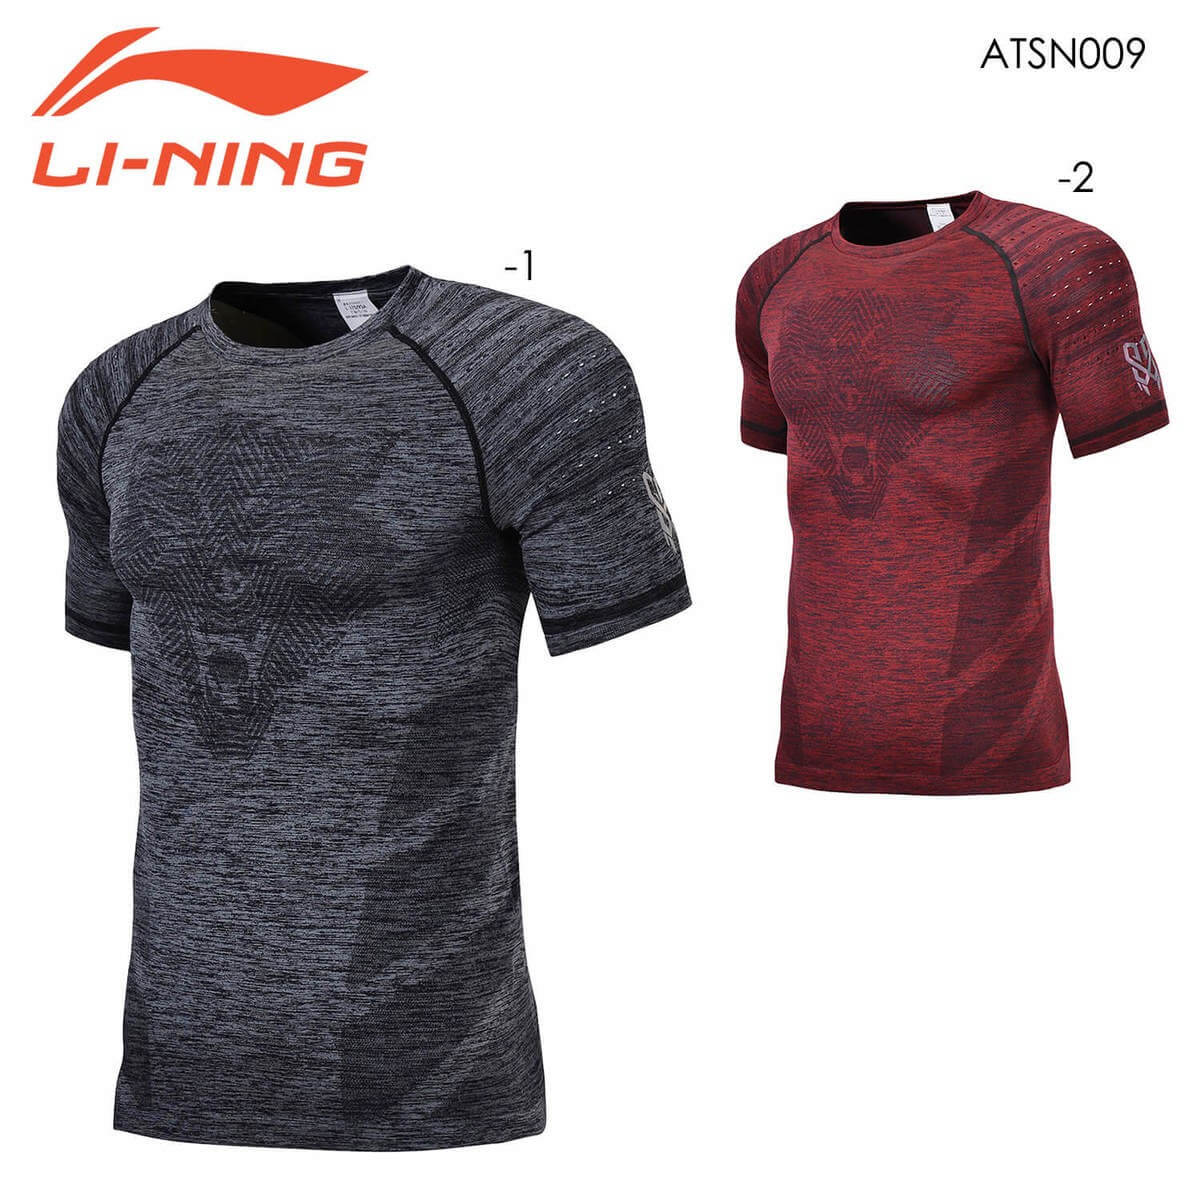 LI-NING ATSN009 トレーニングTシャツ(ユニ/メンズ) バドミントンウェア リーニン【メール便可】